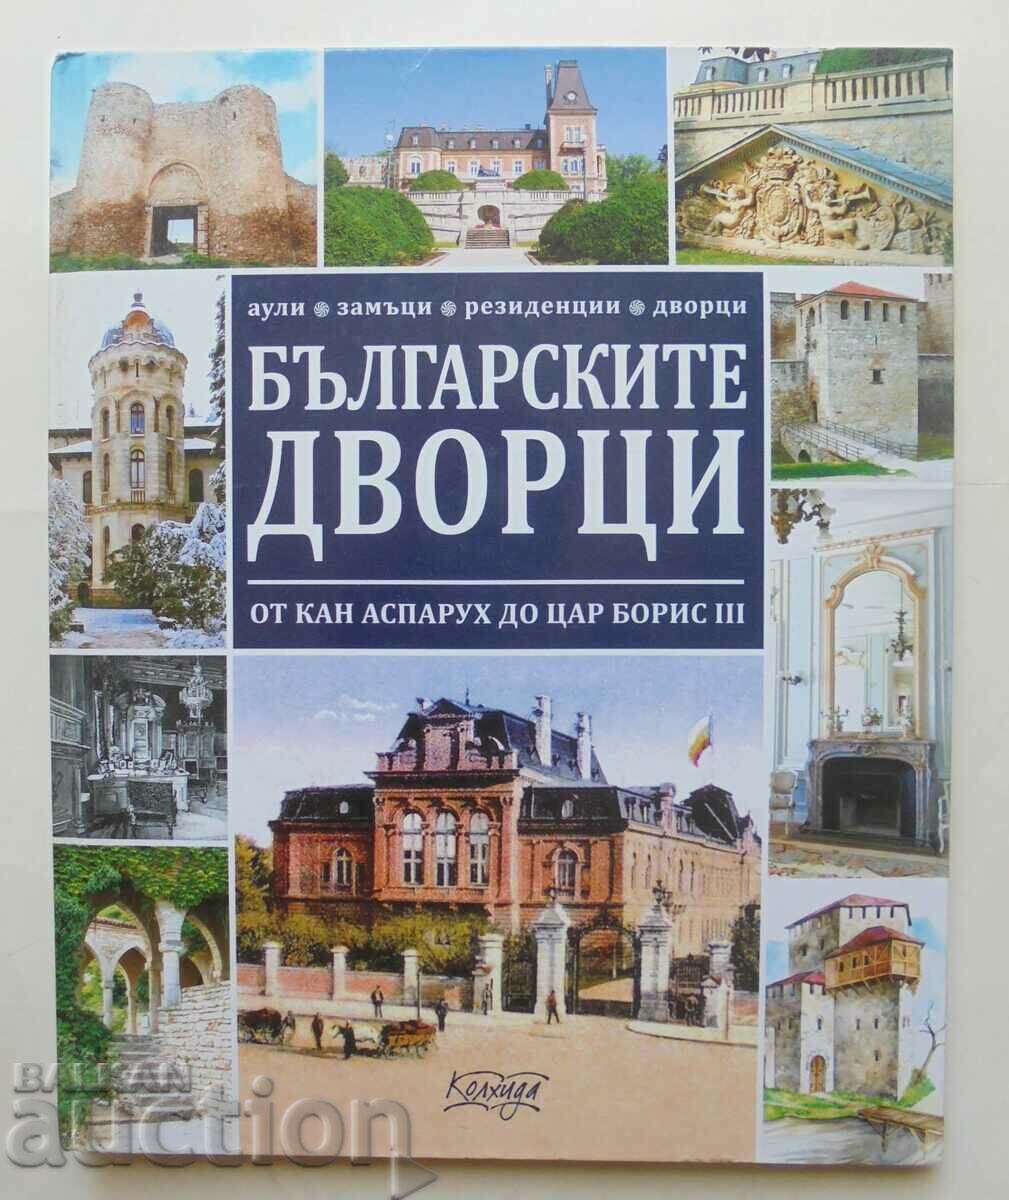 Българските дворци - Ясен Ценов 2018 г.